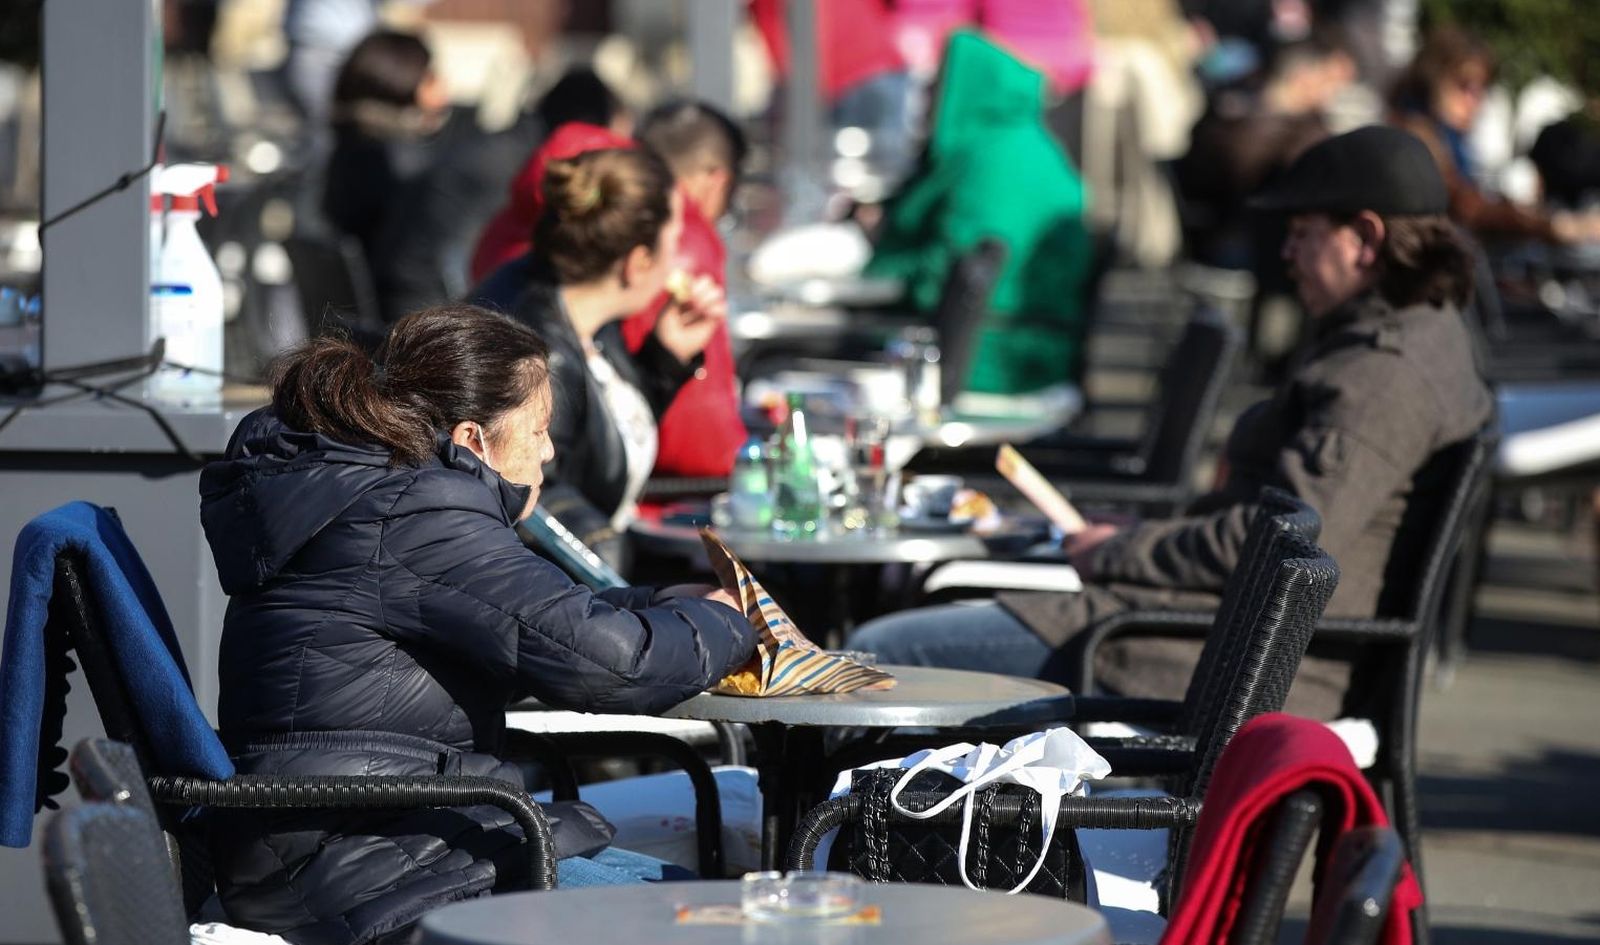 01.03.2021., Zagreb - Ponovno su otvorene terase kafica u centru grada. Photo: Zeljko Hladika/PIXSELL